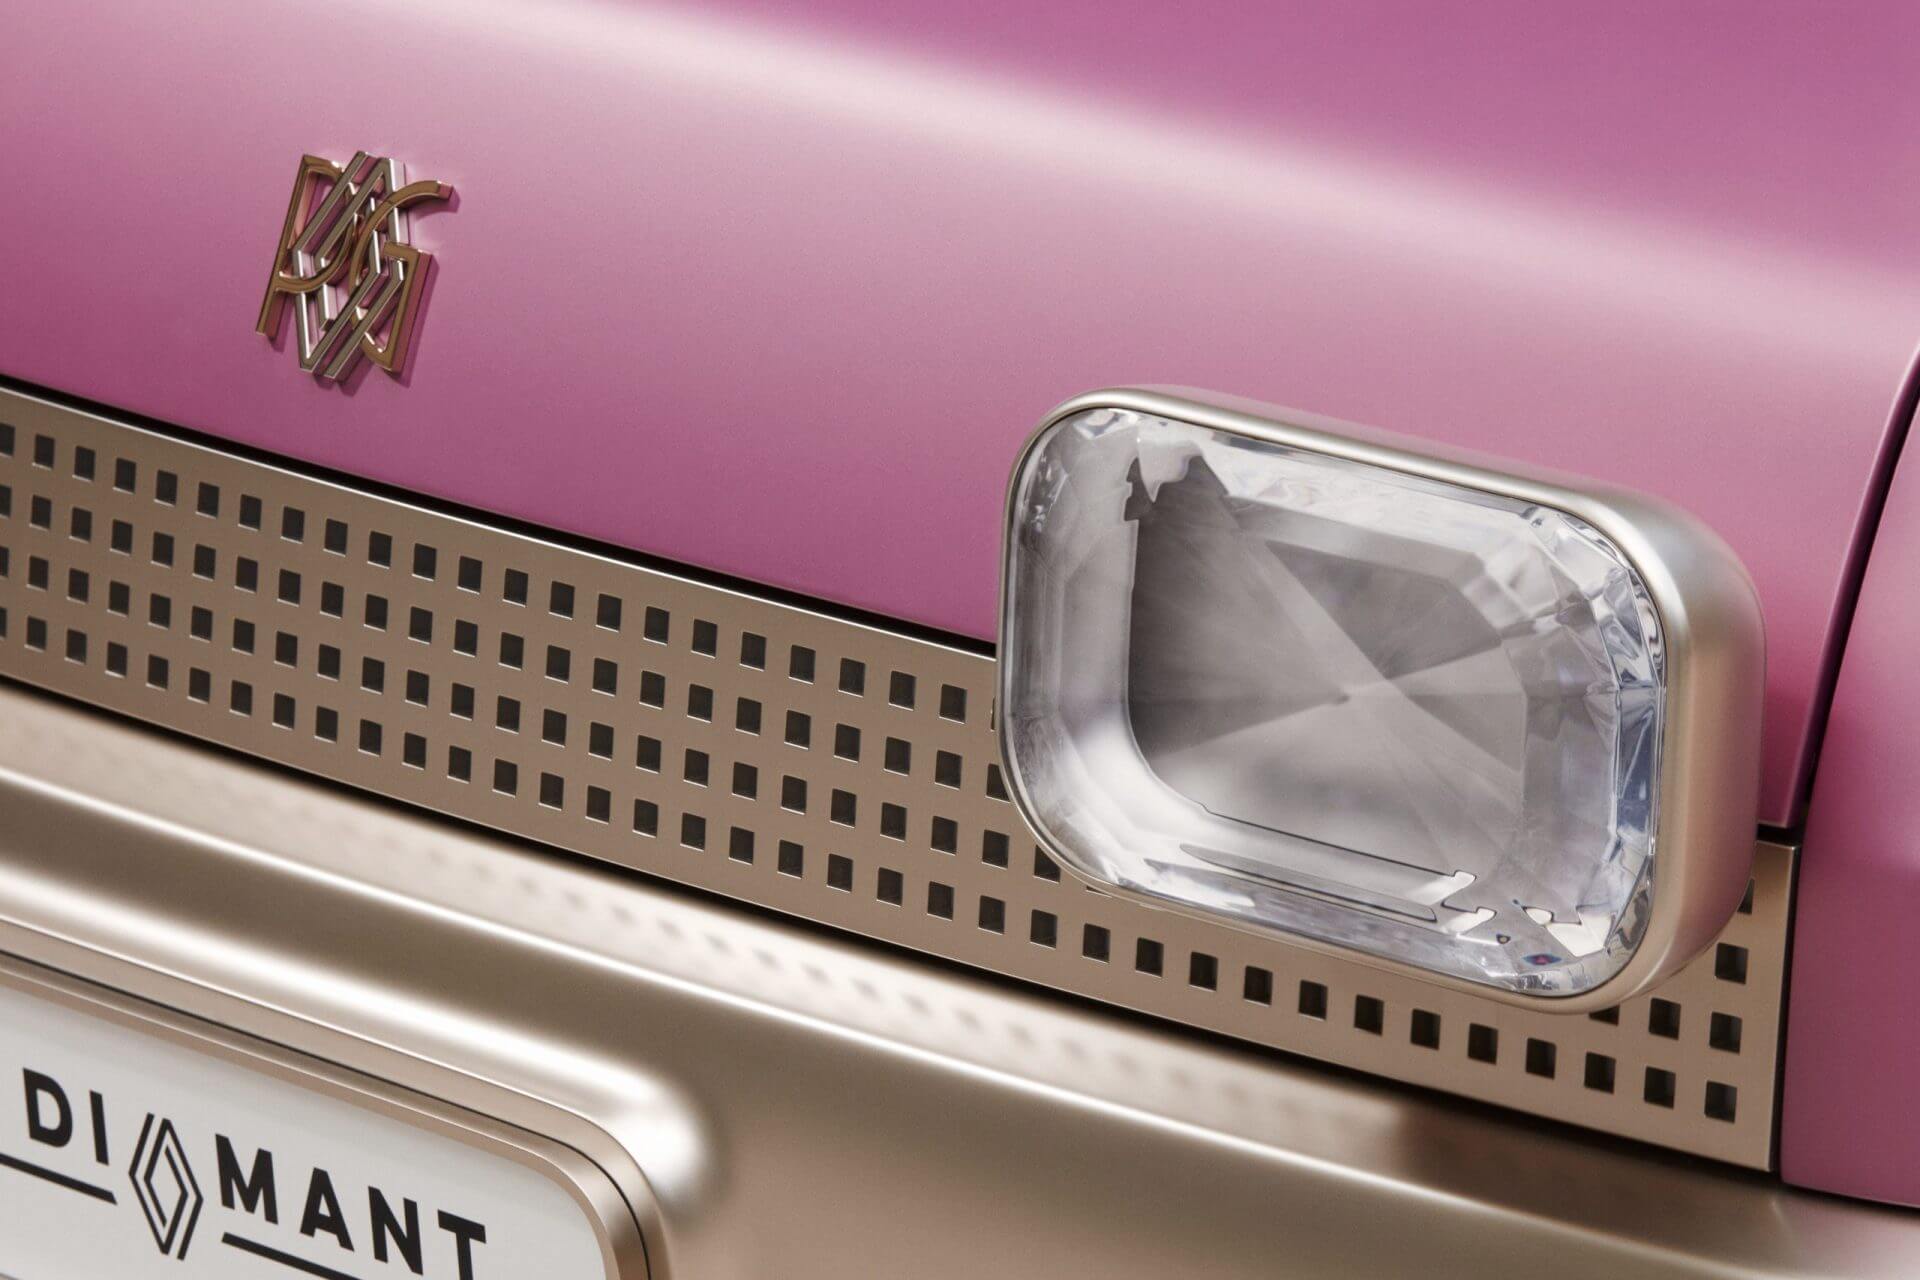 Renault 5 Diamant